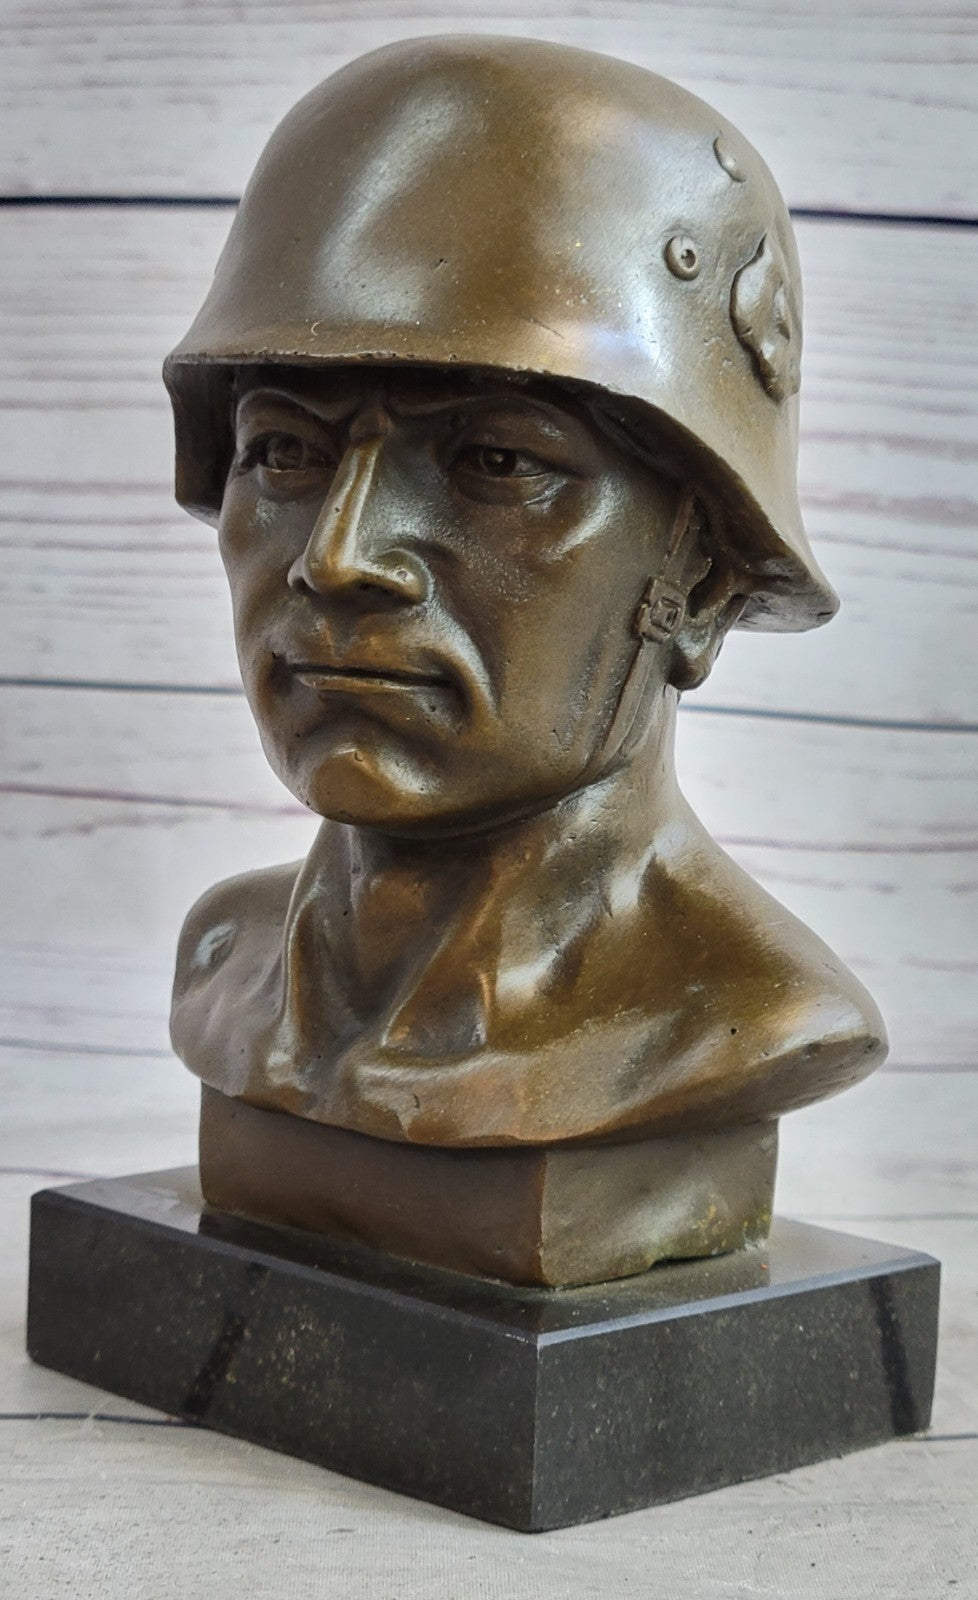 Handcrafted Original German Soldier Collector Memorabilia Bronze Sculpture Art